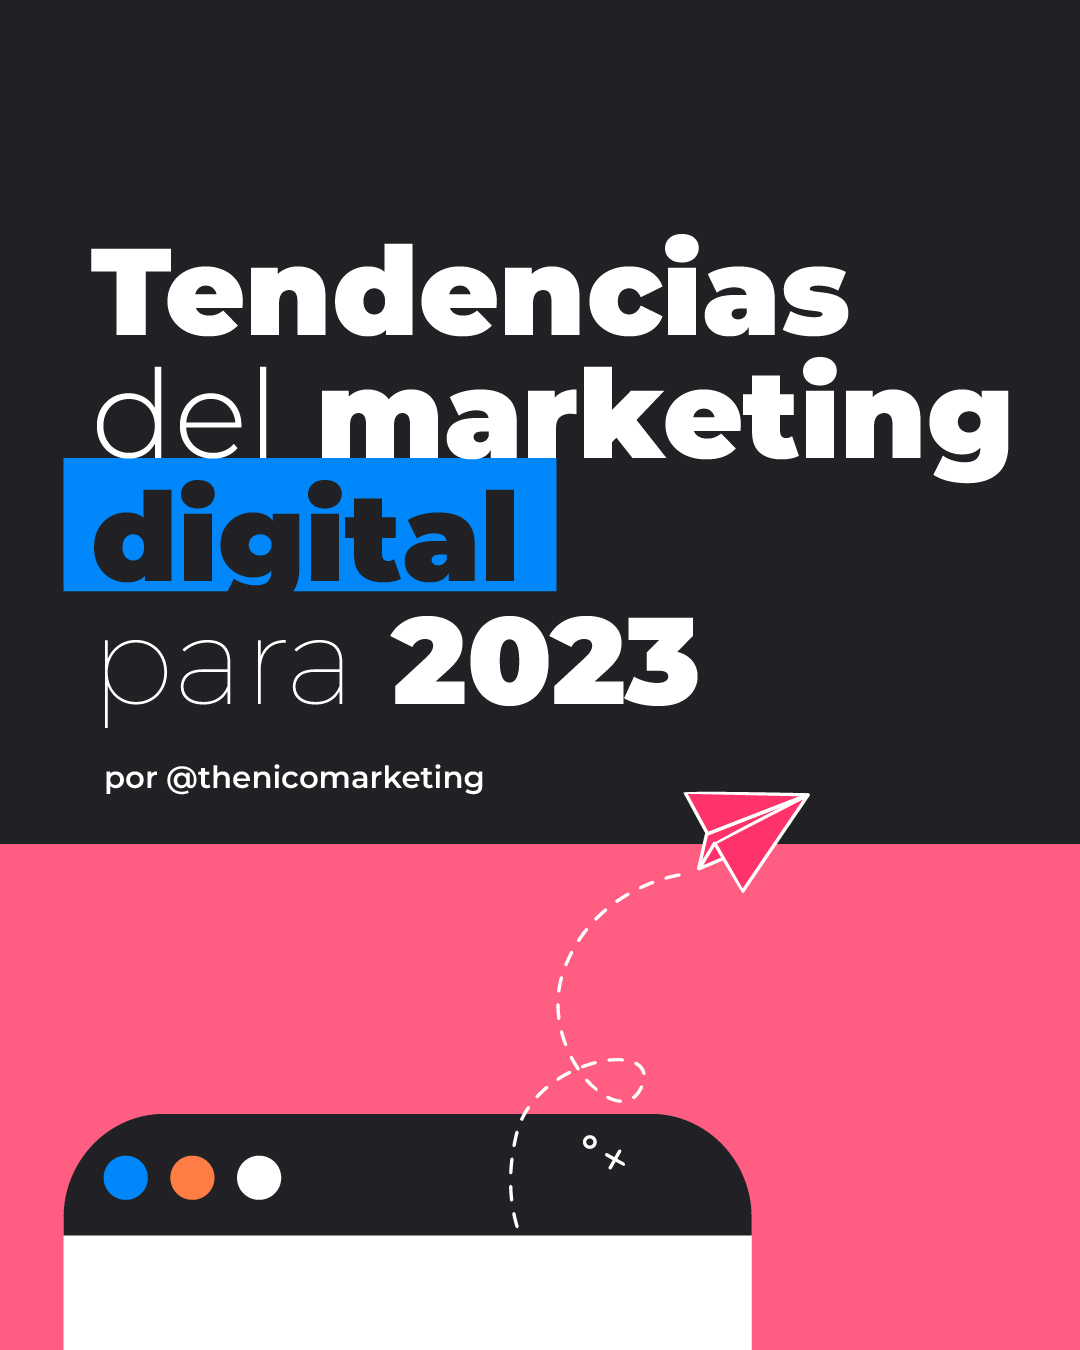 Tendencias Del Marketing Digital 2023 Nico Marchesin 5360